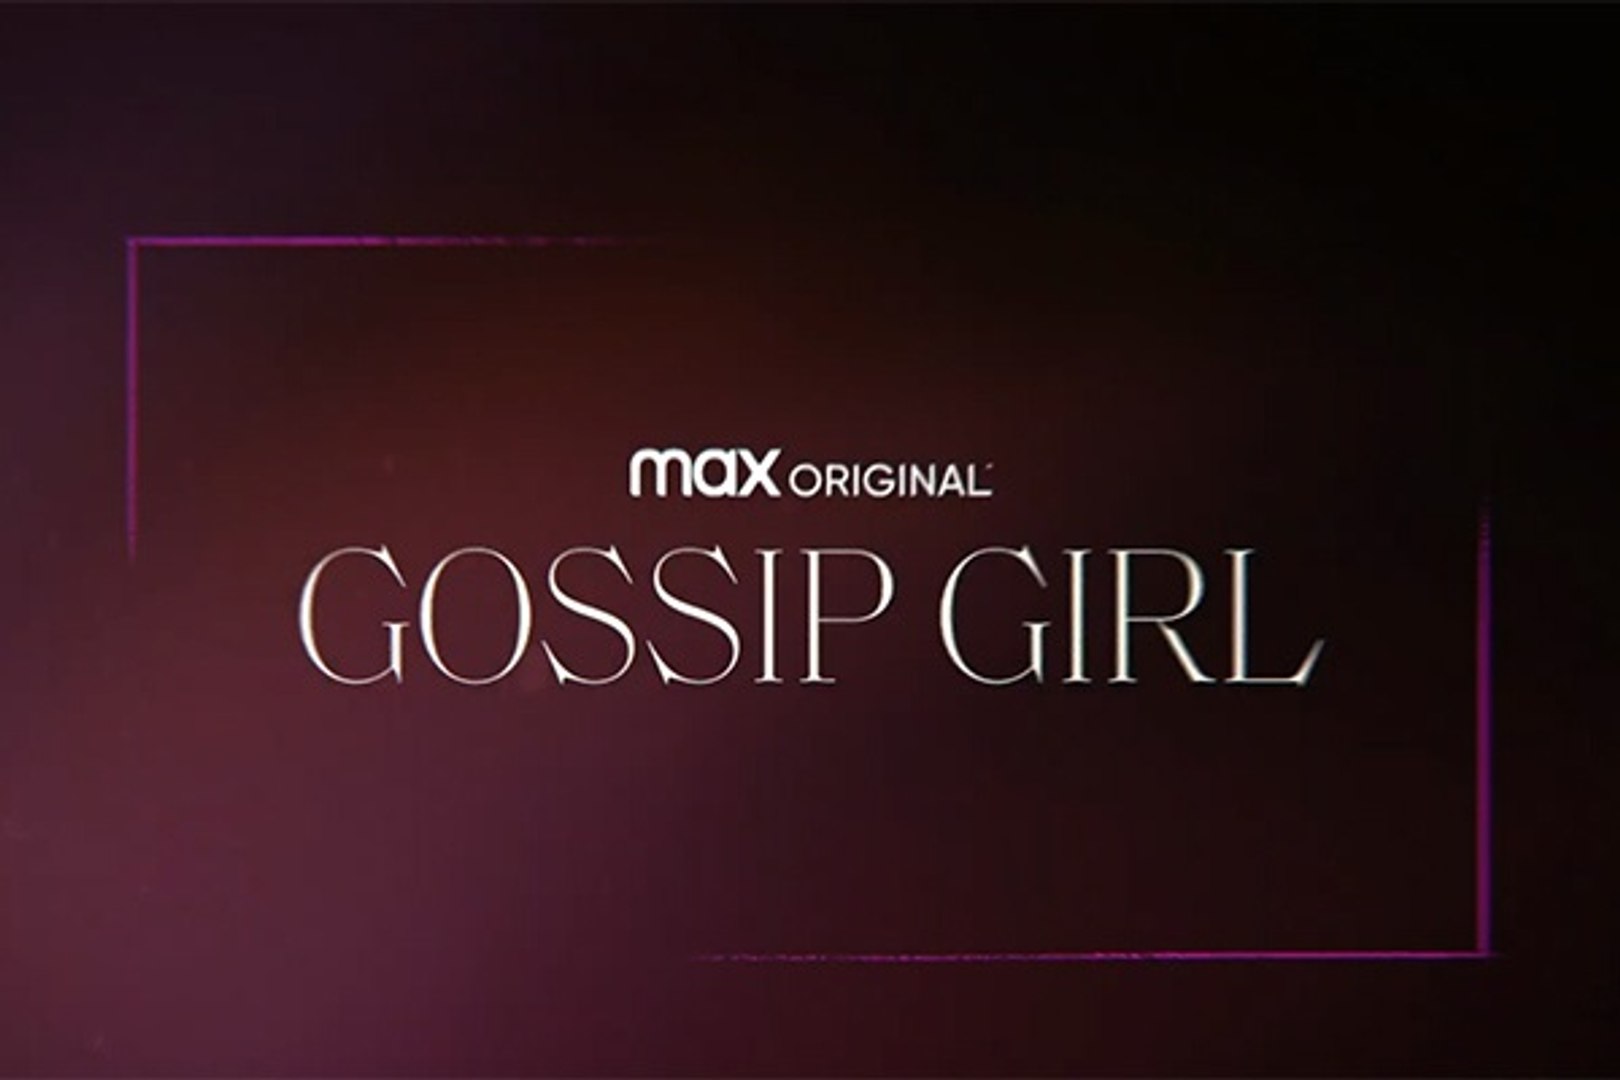 Gossip Girl - Teaser Saison 1 - HBO Max